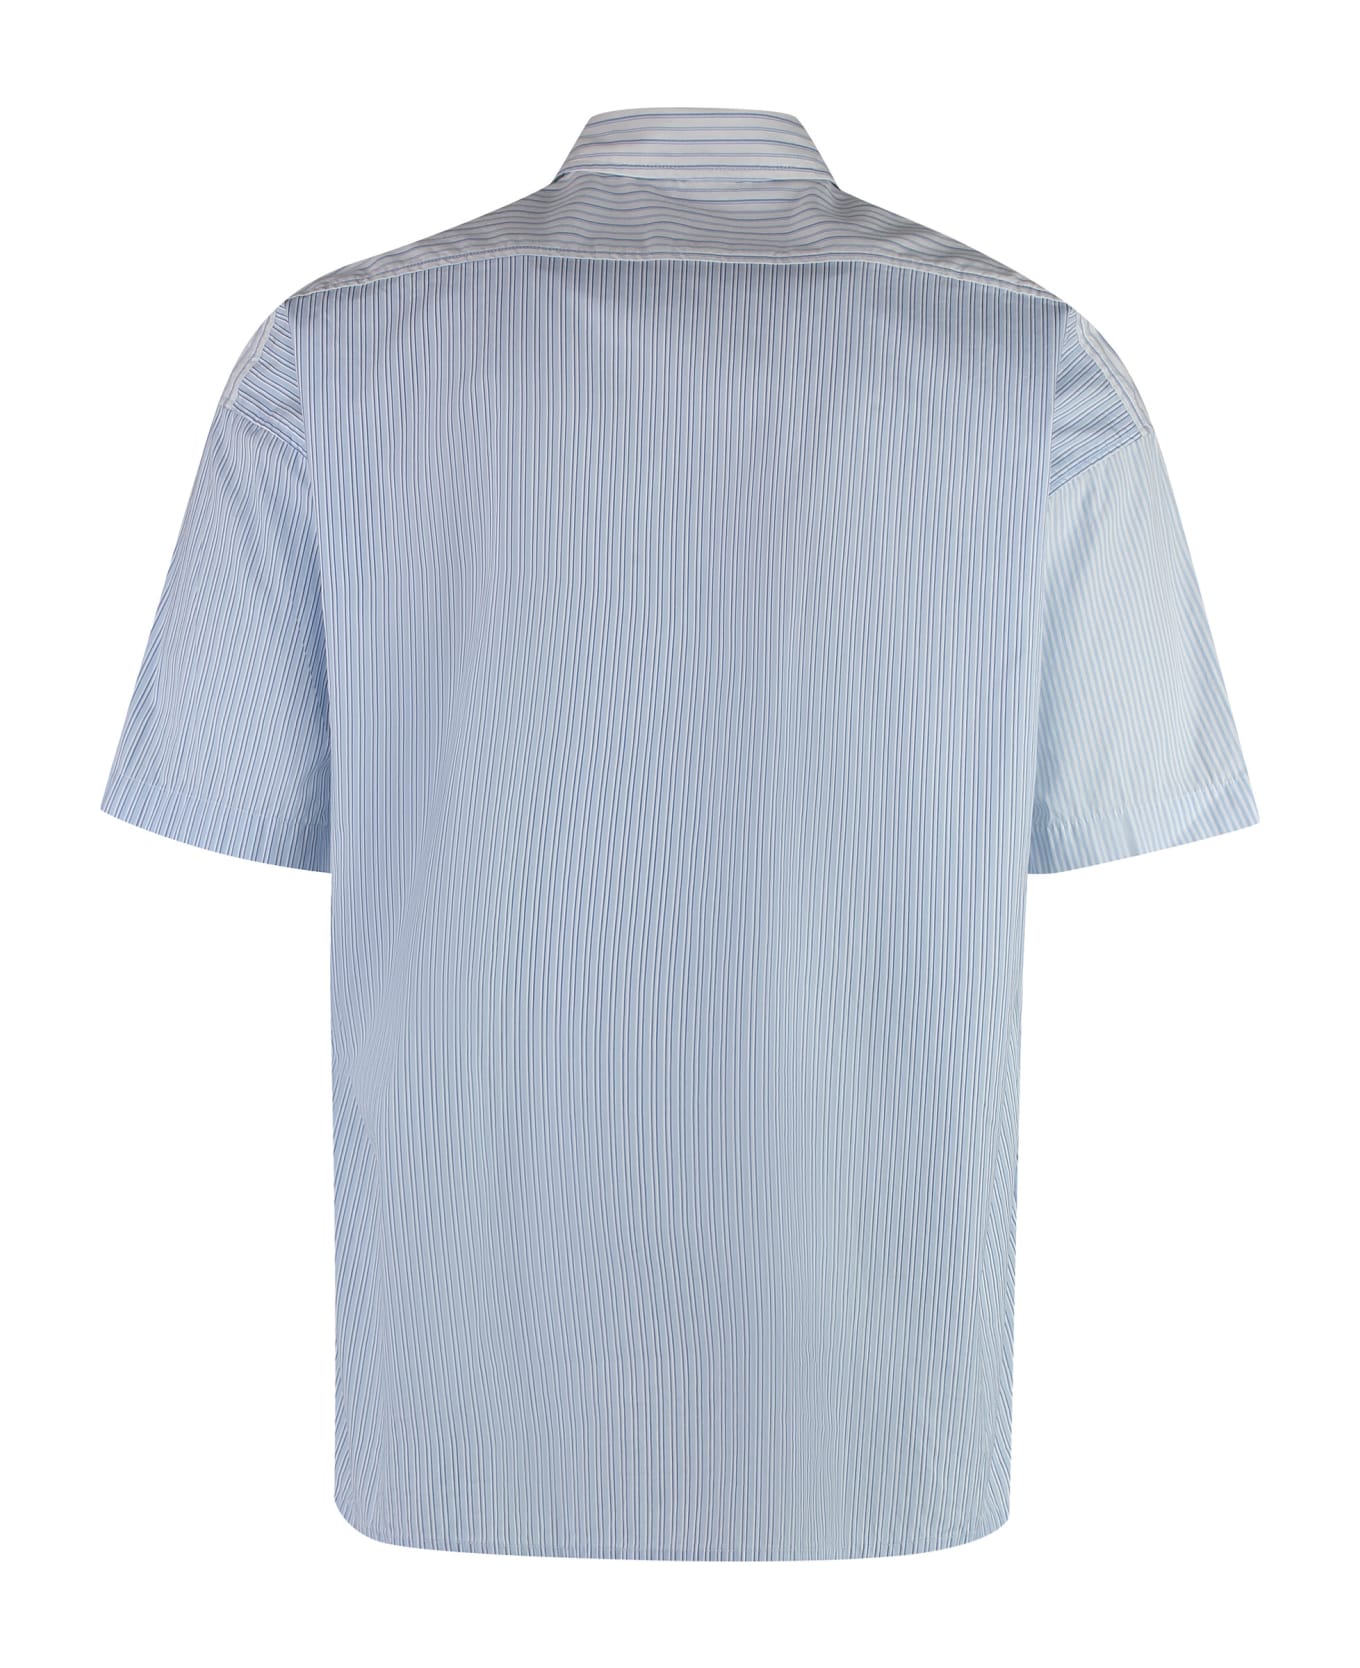 Hugo Boss Striped Cotton Shirt - Light Blue